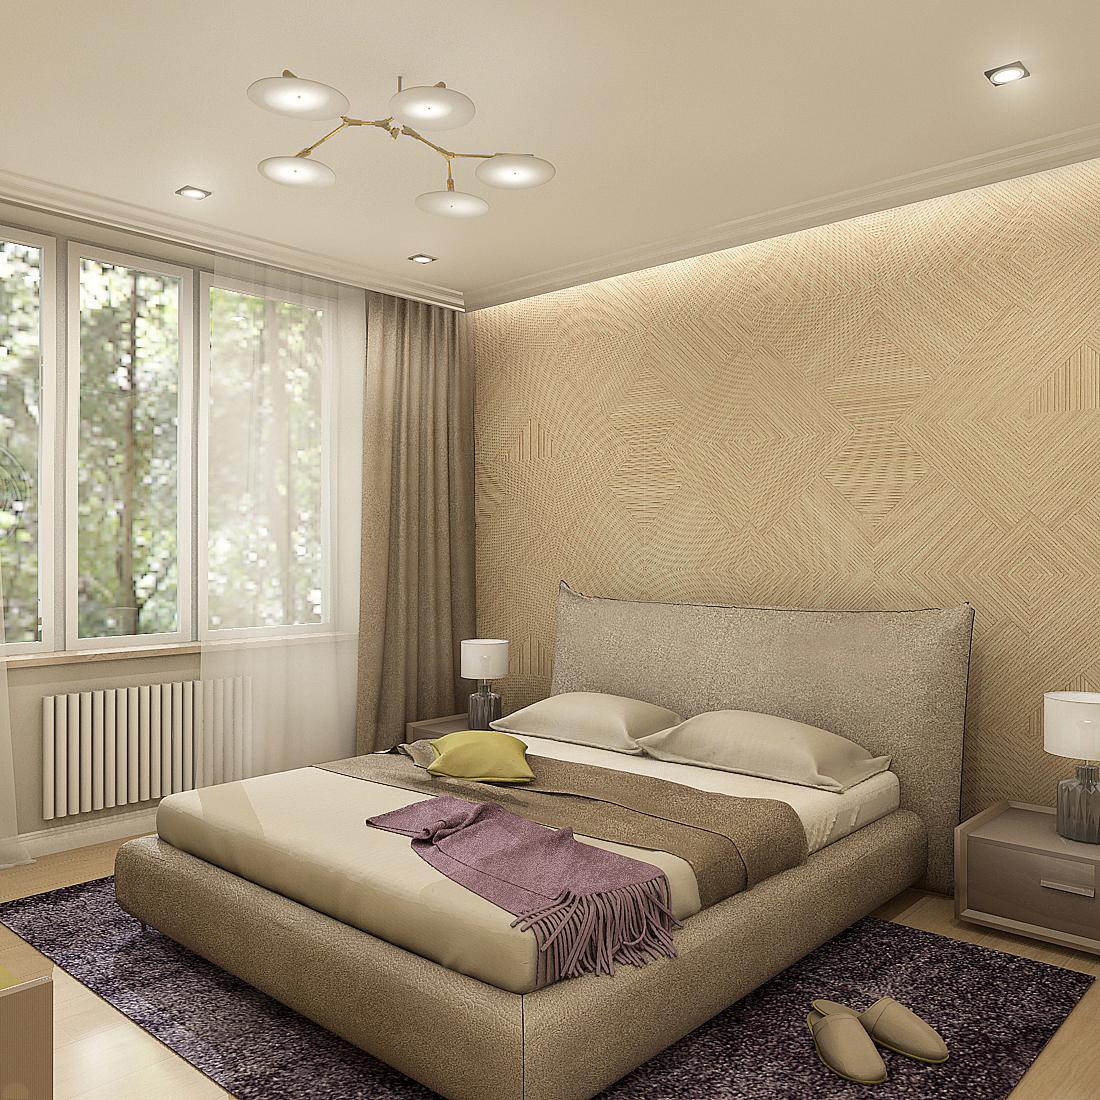 Интерьер спальни cветовыми линиями, подсветкой настенной, подсветкой светодиодной, светильниками над кроватью и с подсветкой